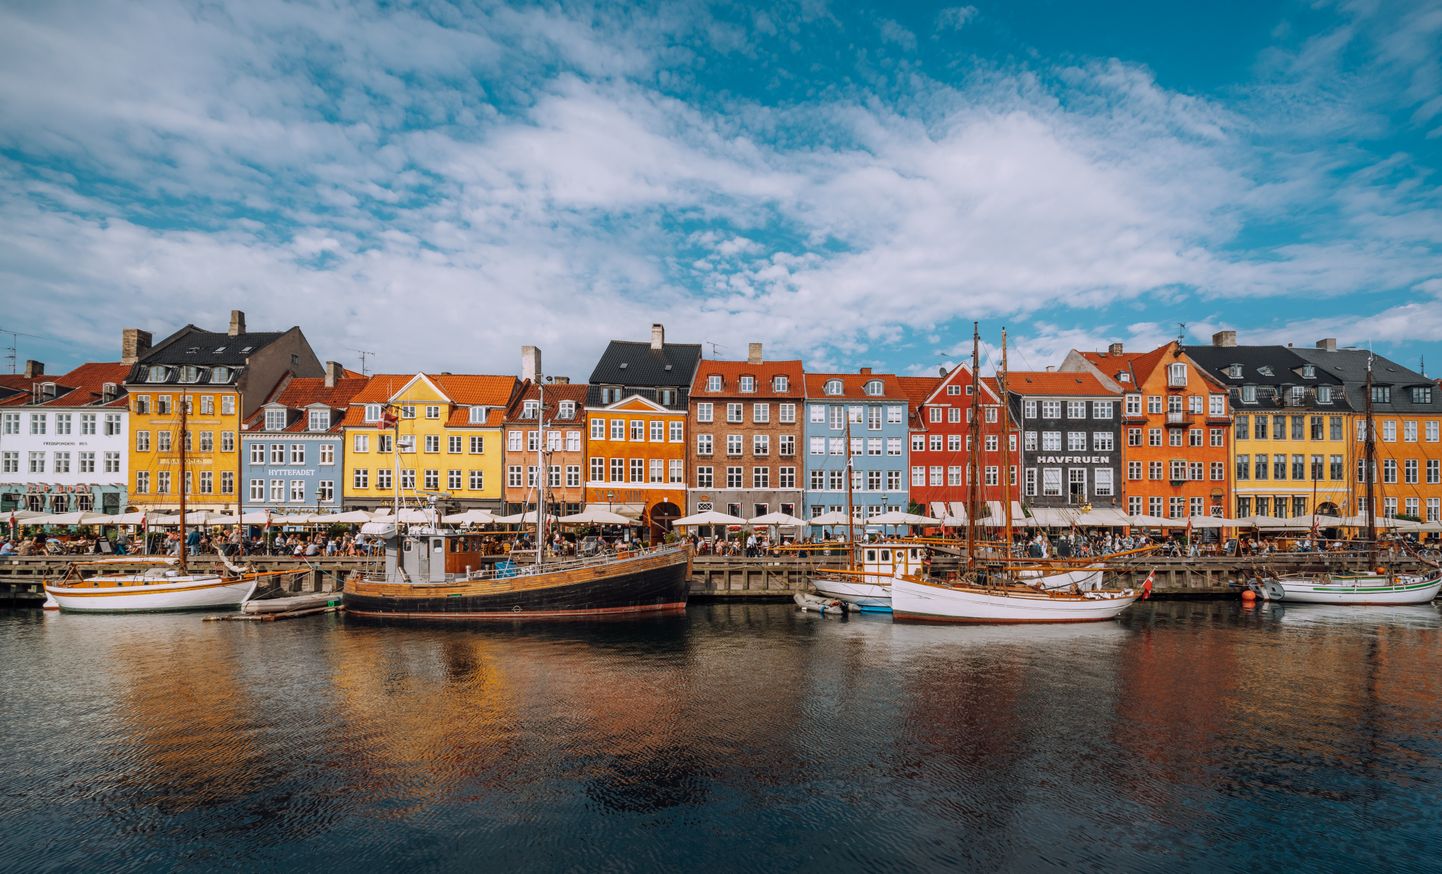 Dānis galvaspilsēta Kopenhāgena.